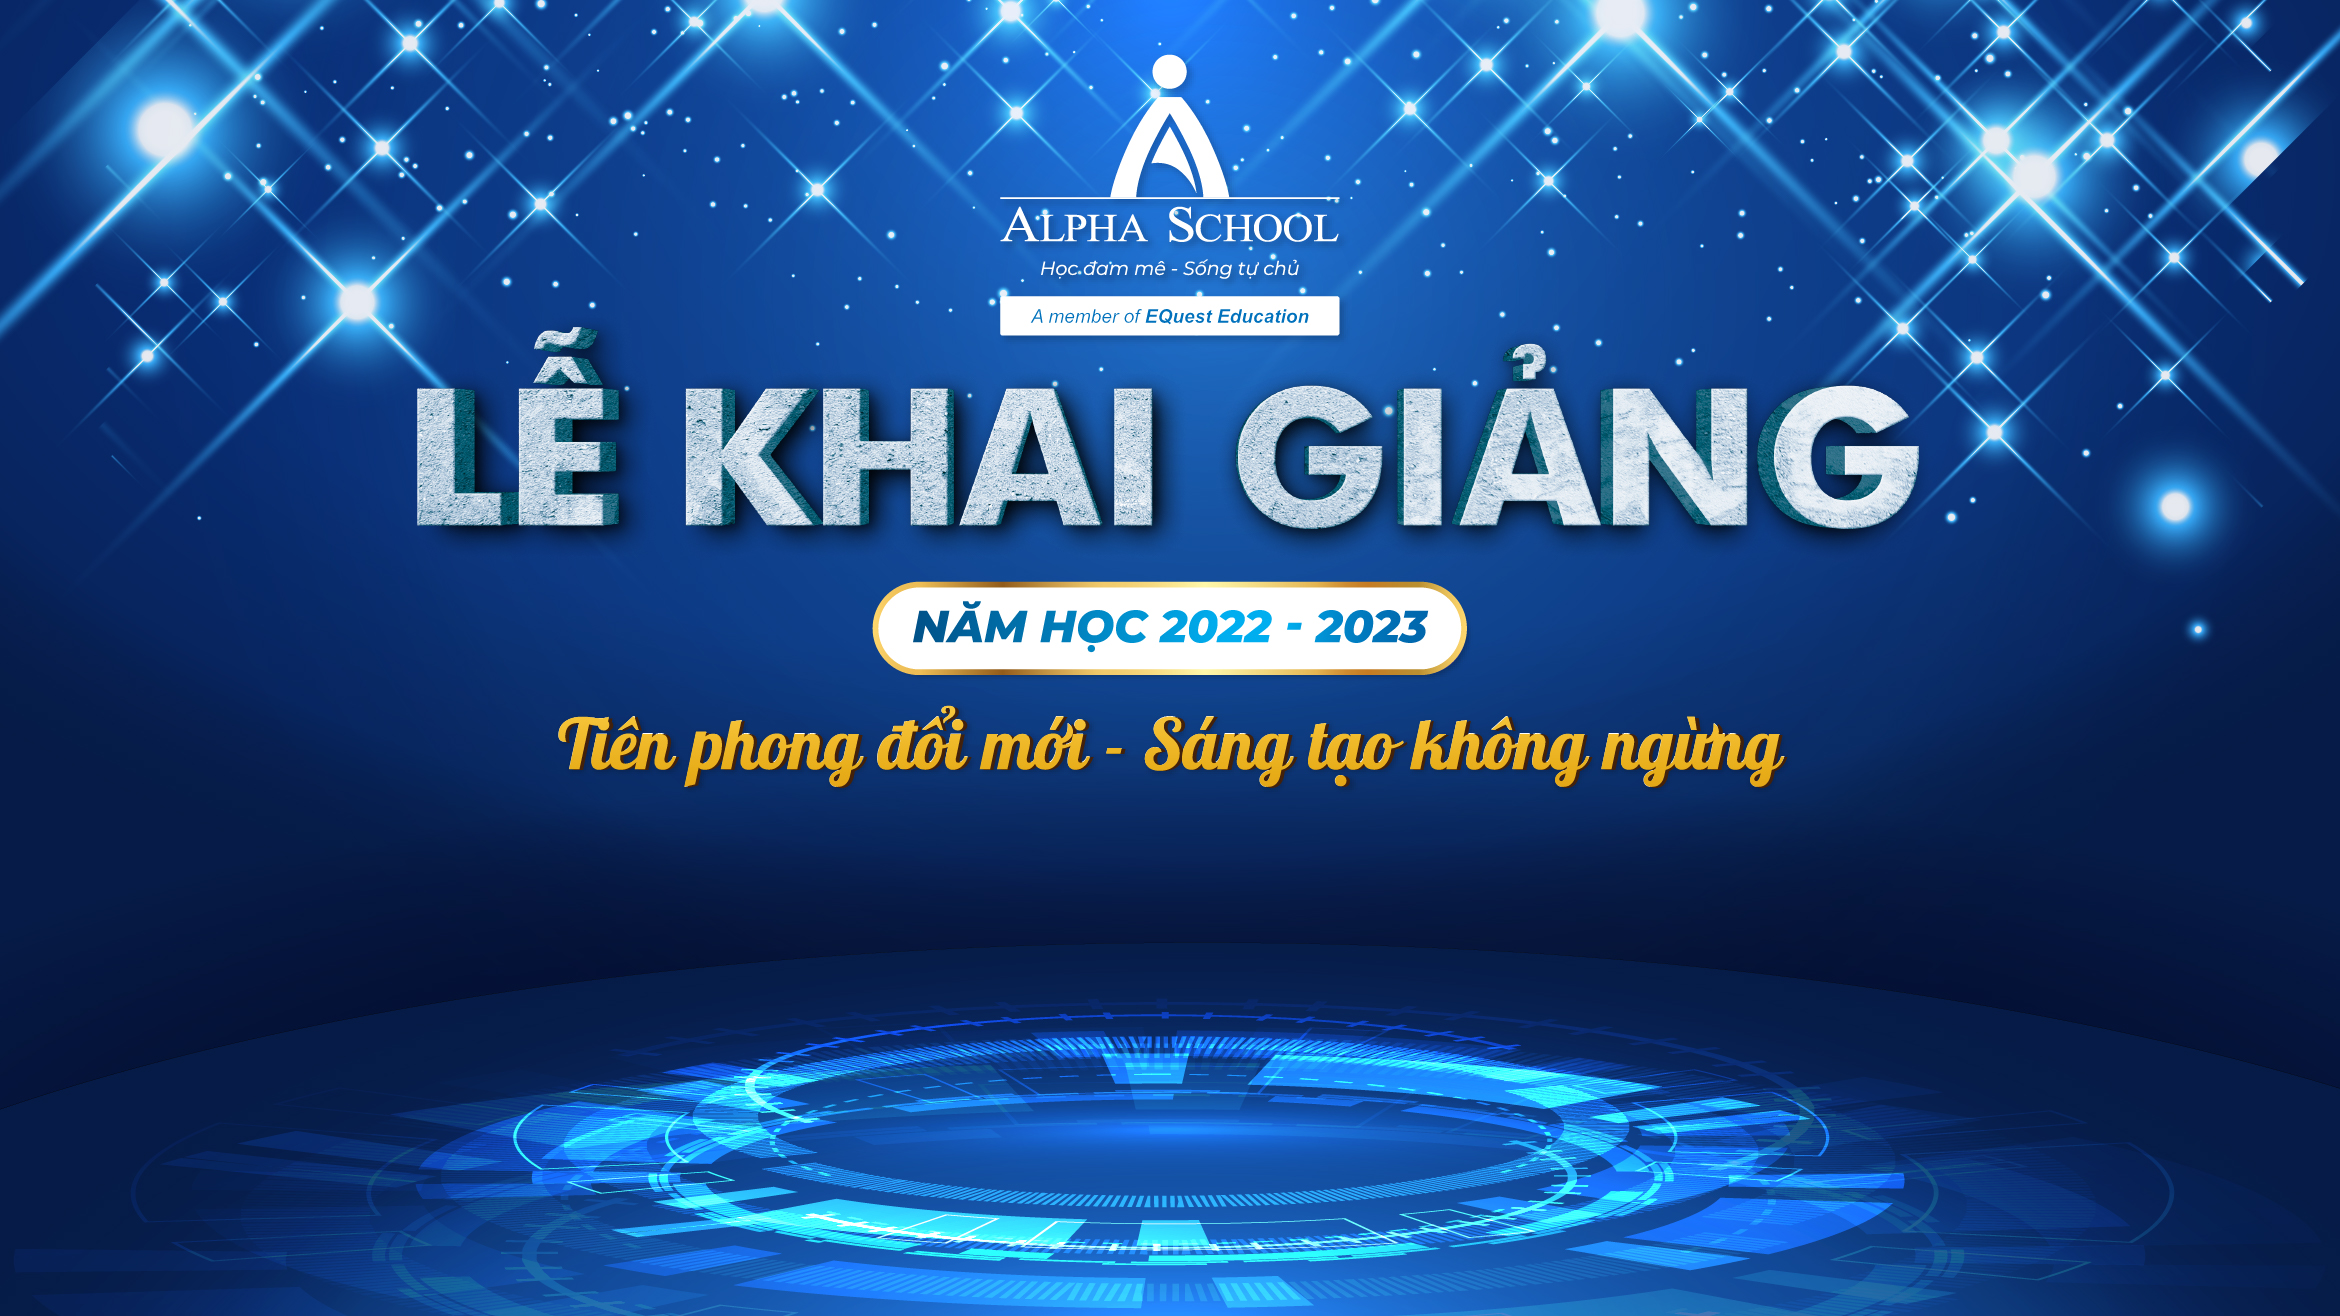 LỄ KHAI GIẢNG NĂM HỌC MỚI 2022 - 2023 - Alpha School - Học đam mê, Sống tự  chủ